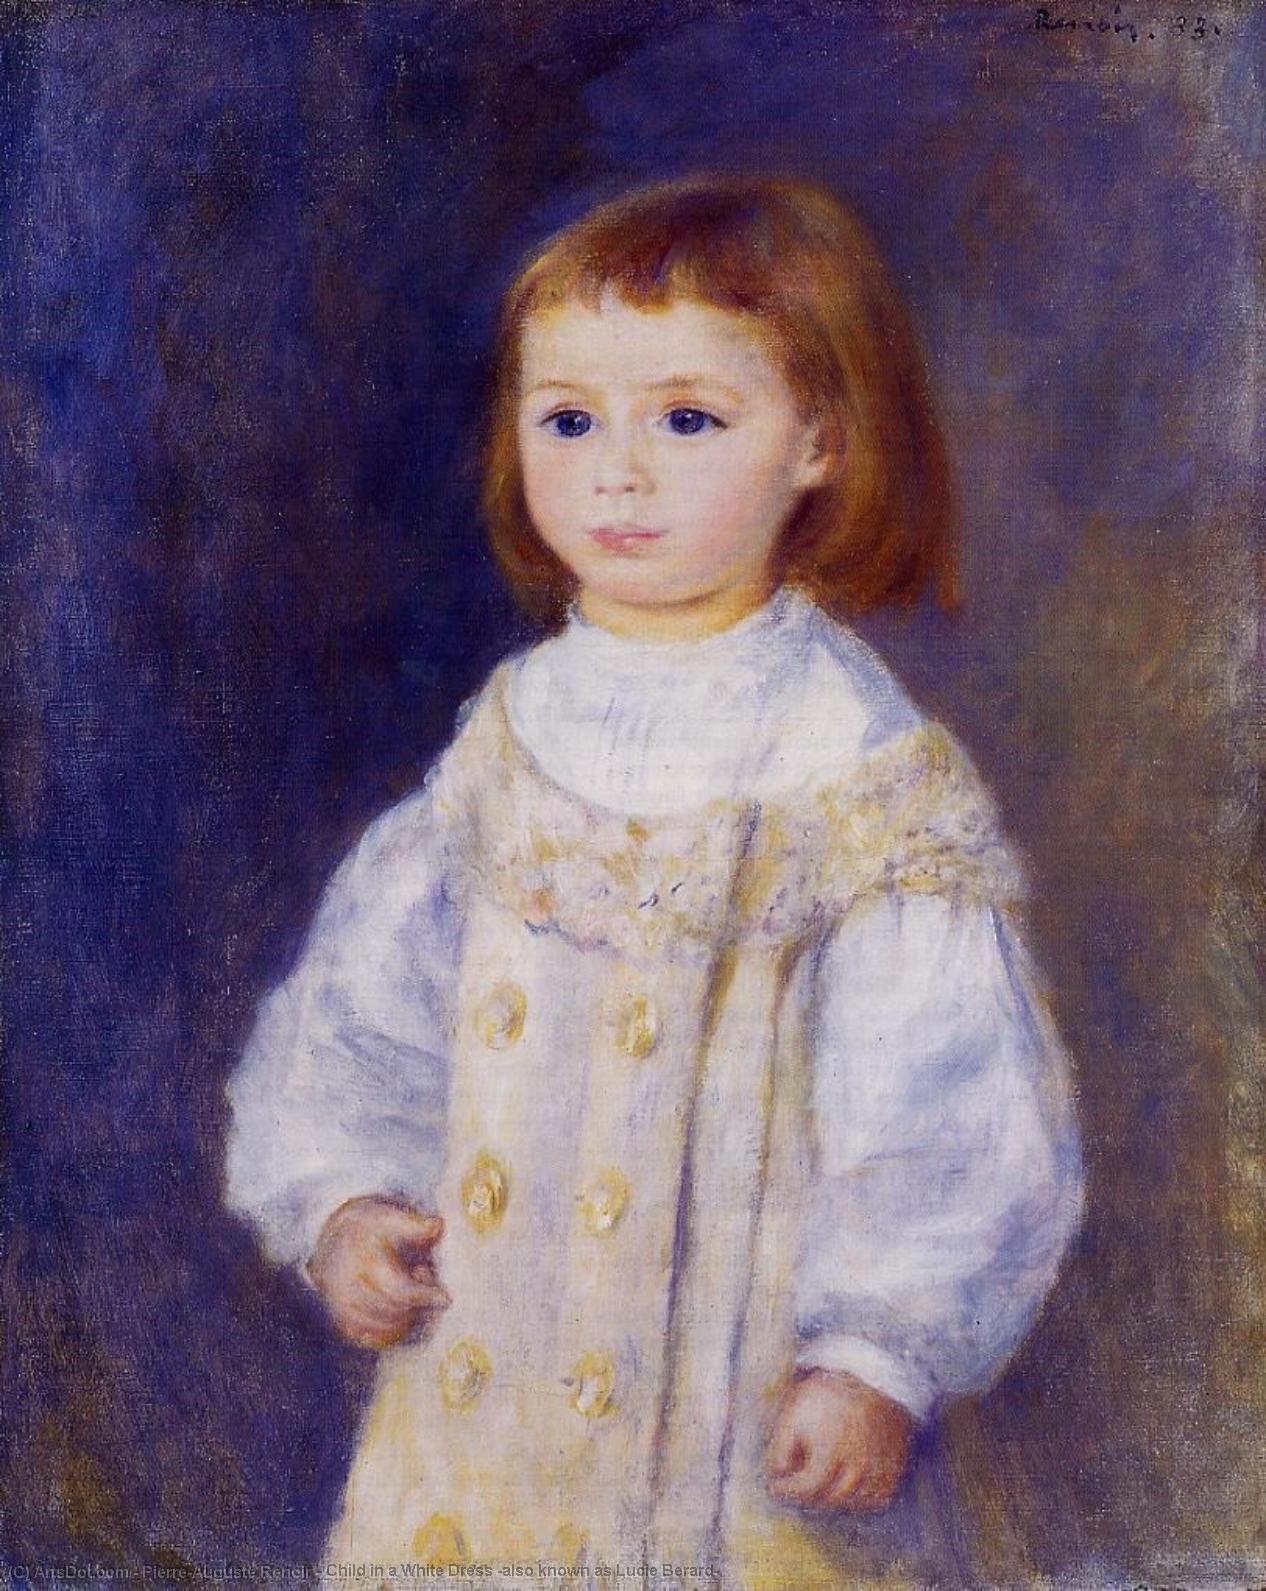 Wikoo.org - موسوعة الفنون الجميلة - اللوحة، العمل الفني Pierre-Auguste Renoir - Child in a White Dress (also known as Lucie Berard)